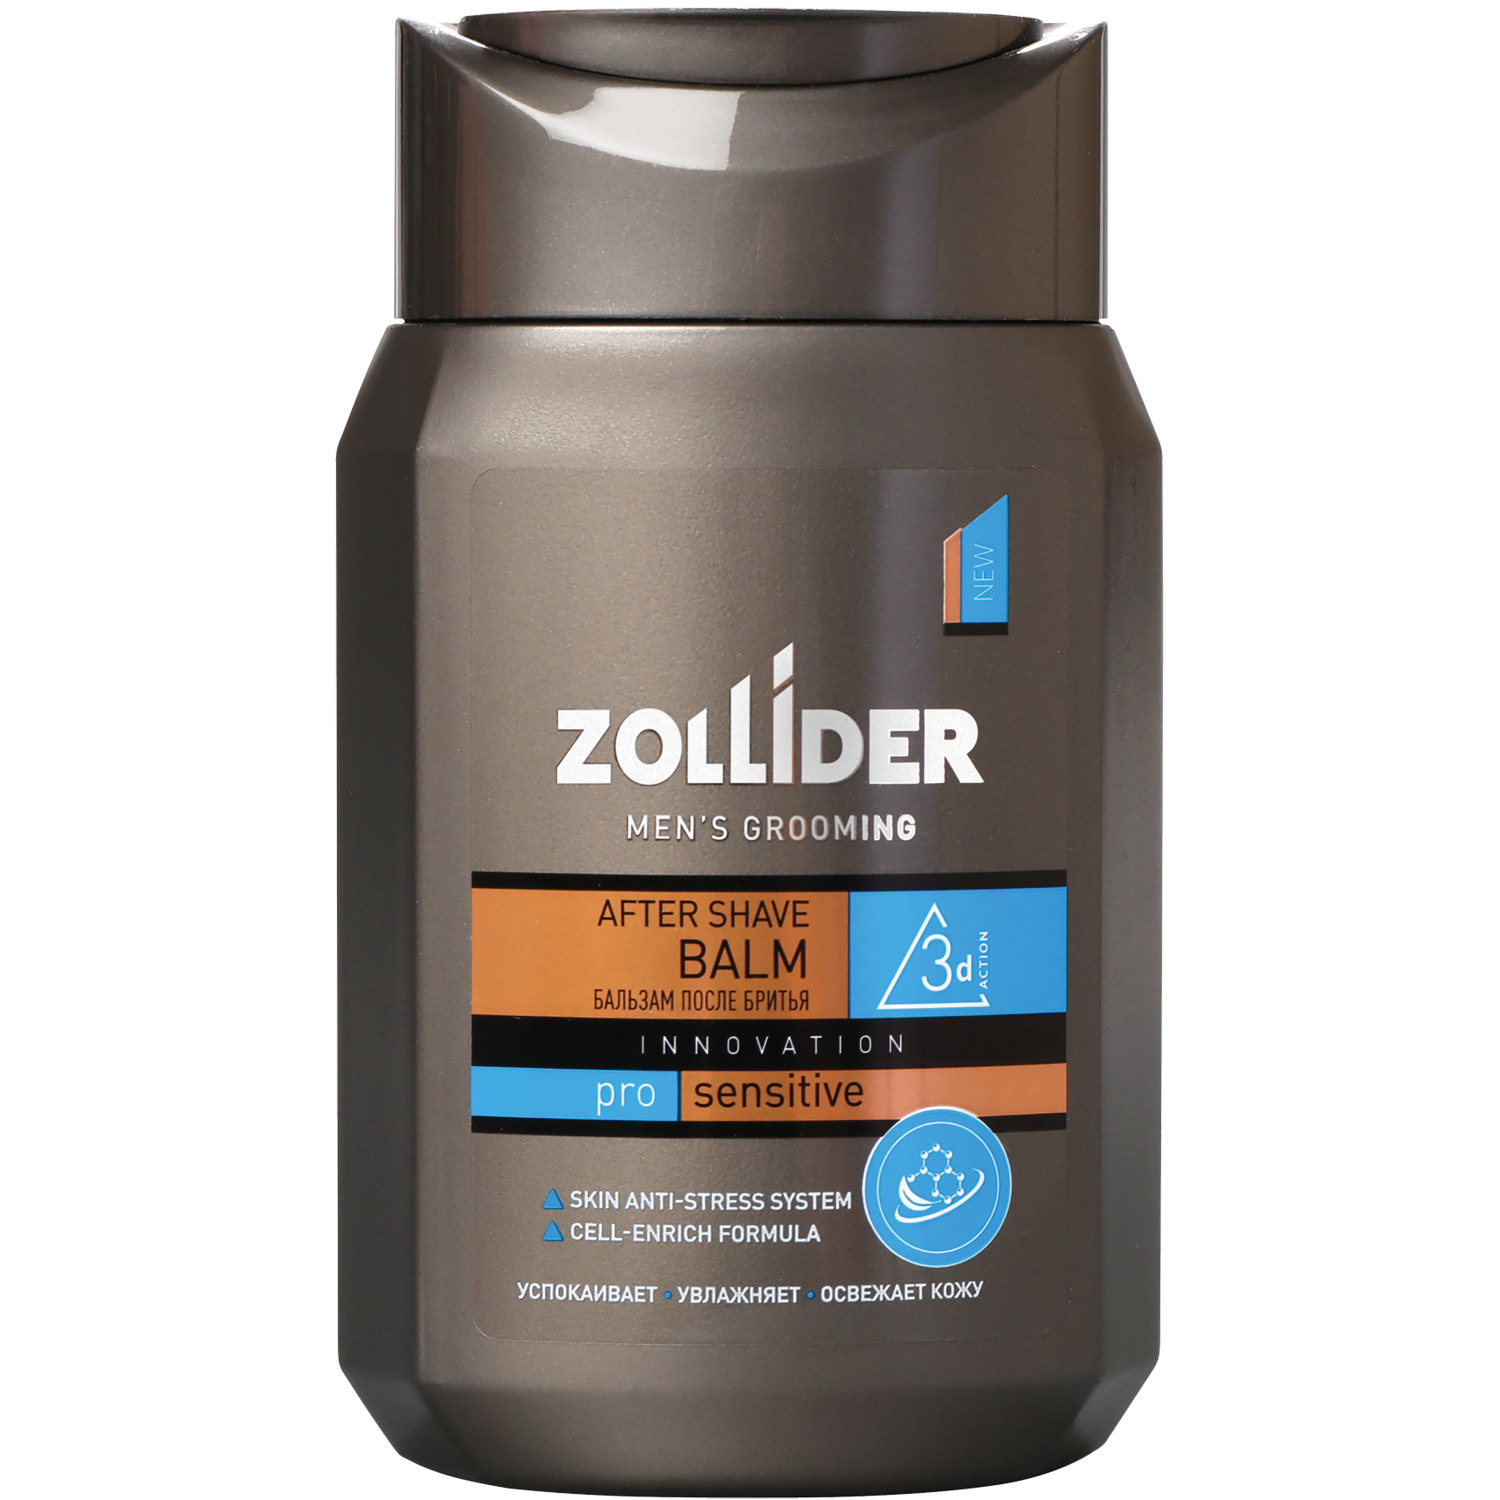 Бальзам после бритья Zollider Pro Sensitive для чувствительной кожи 150 мл бальзам после бритья для чувствительной кожи 100 мл nivea